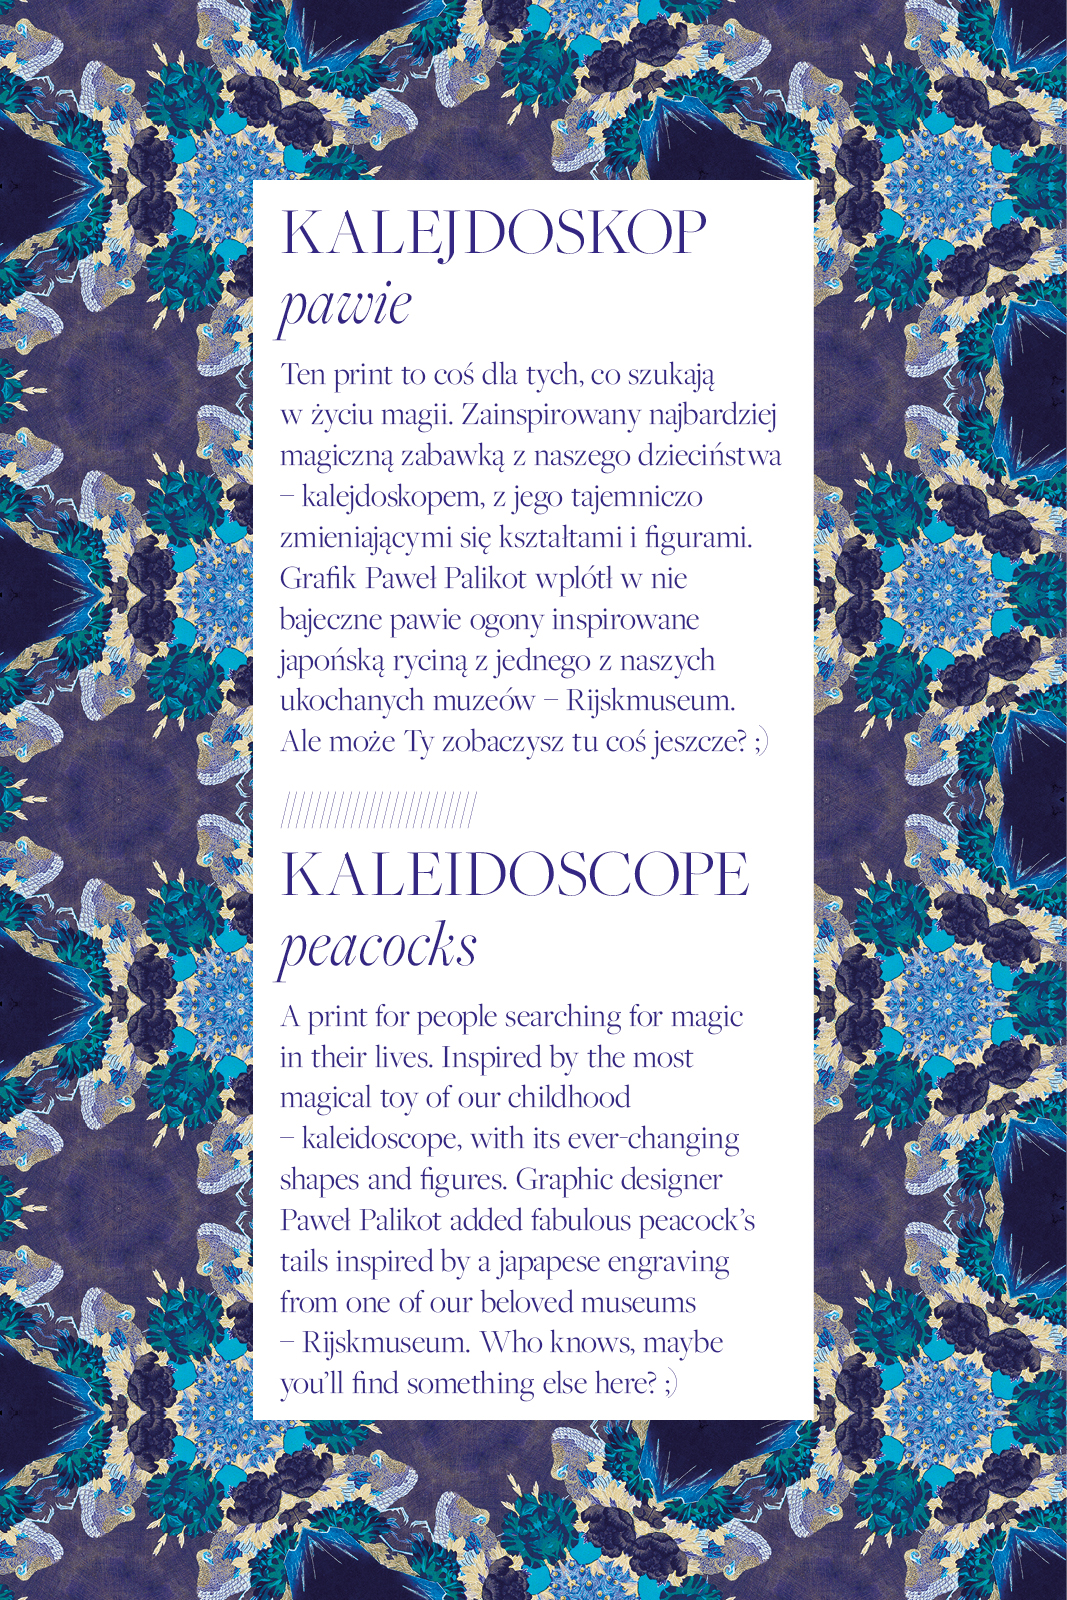 OLIMPIA hocus pocus kaleidoscope print